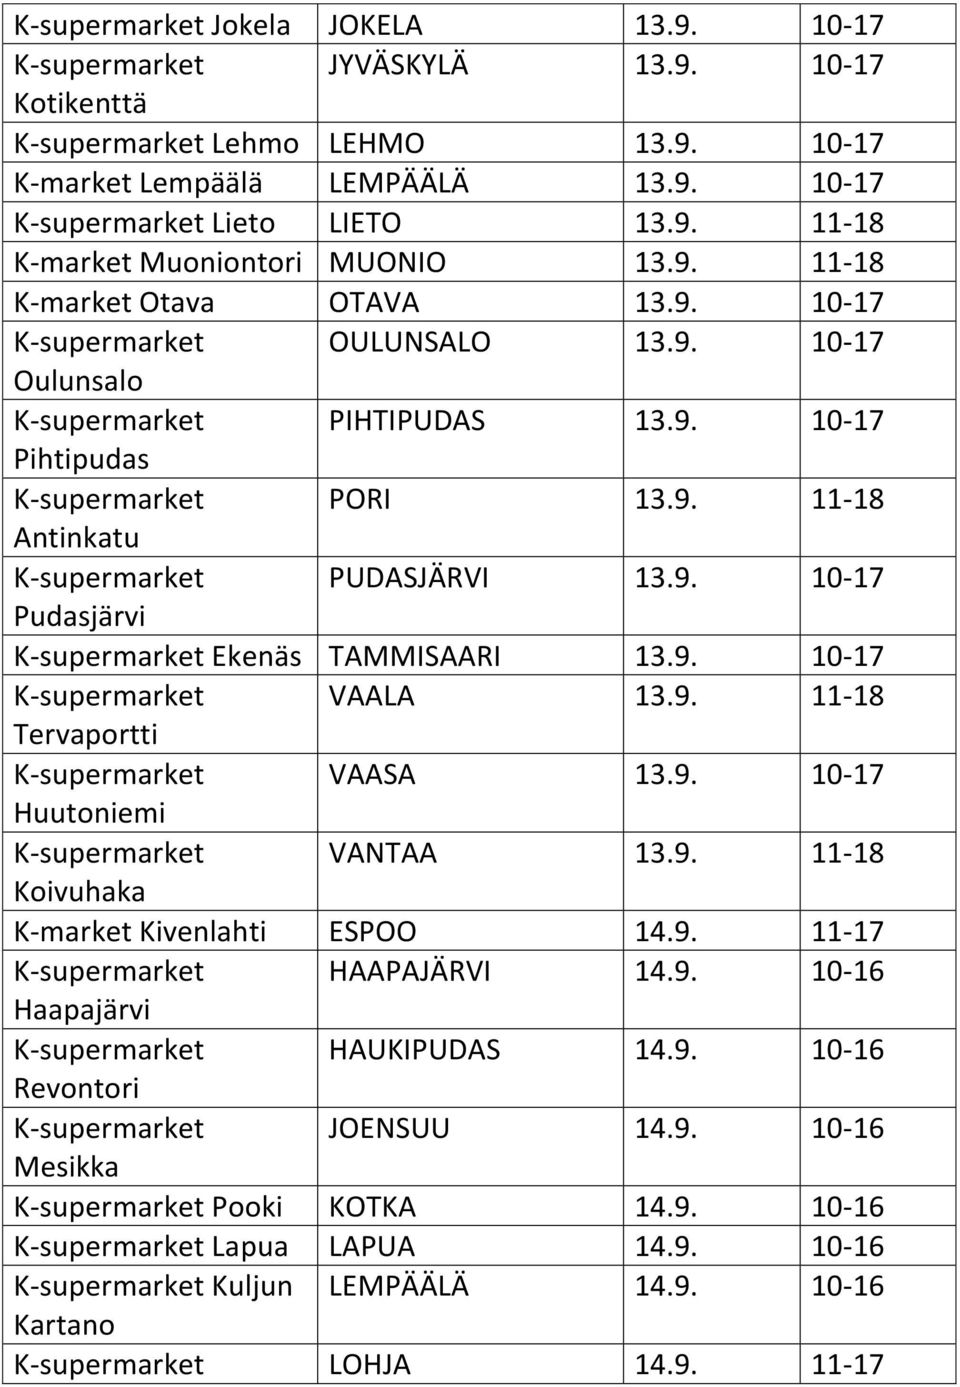 9. 10-17 Pudasjärvi K-supermarket Ekenäs TAMMISAARI 13.9. 10-17 K-supermarket VAALA 13.9. 11-18 Tervaportti K-supermarket VAASA 13.9. 10-17 Huutoniemi K-supermarket VANTAA 13.9. 11-18 Koivuhaka K-market Kivenlahti ESPOO 14.